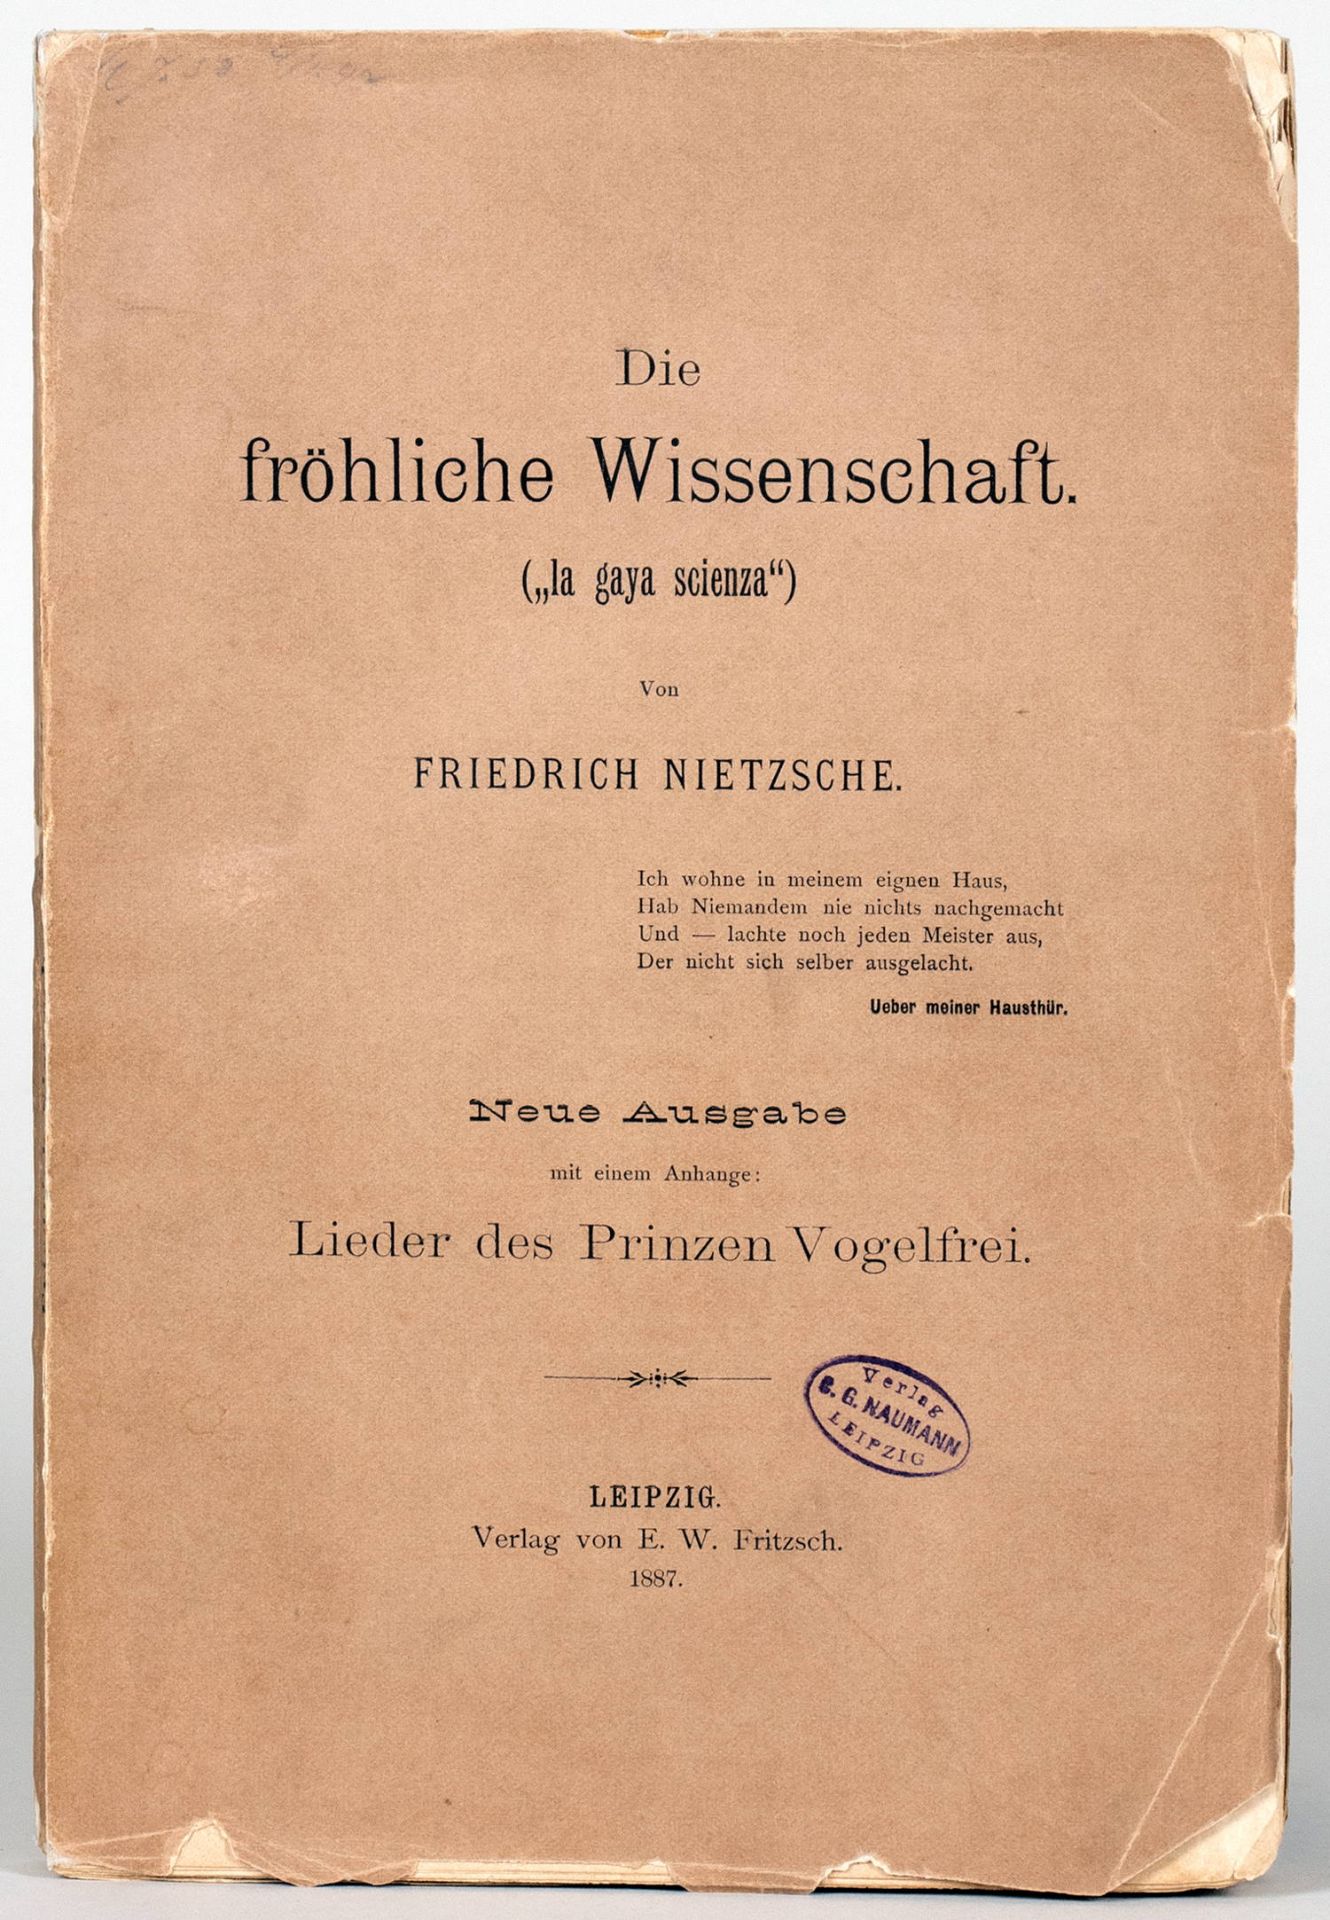 Friedrich Nietzsche. Die fröhliche Wissenschaft.